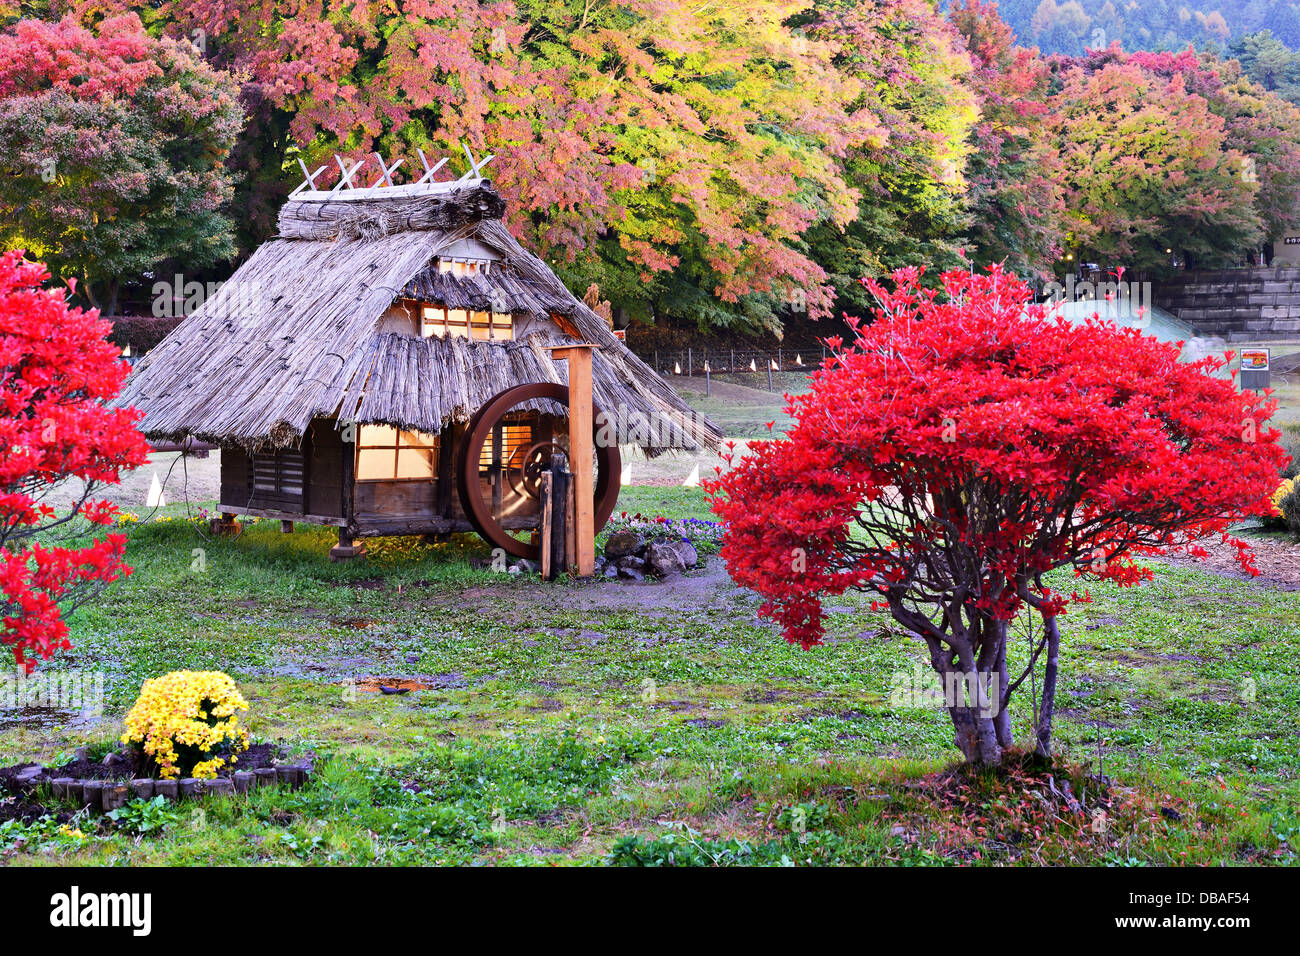 Huts and fall foliage in Kawaguchi, Japan. Stock Photo